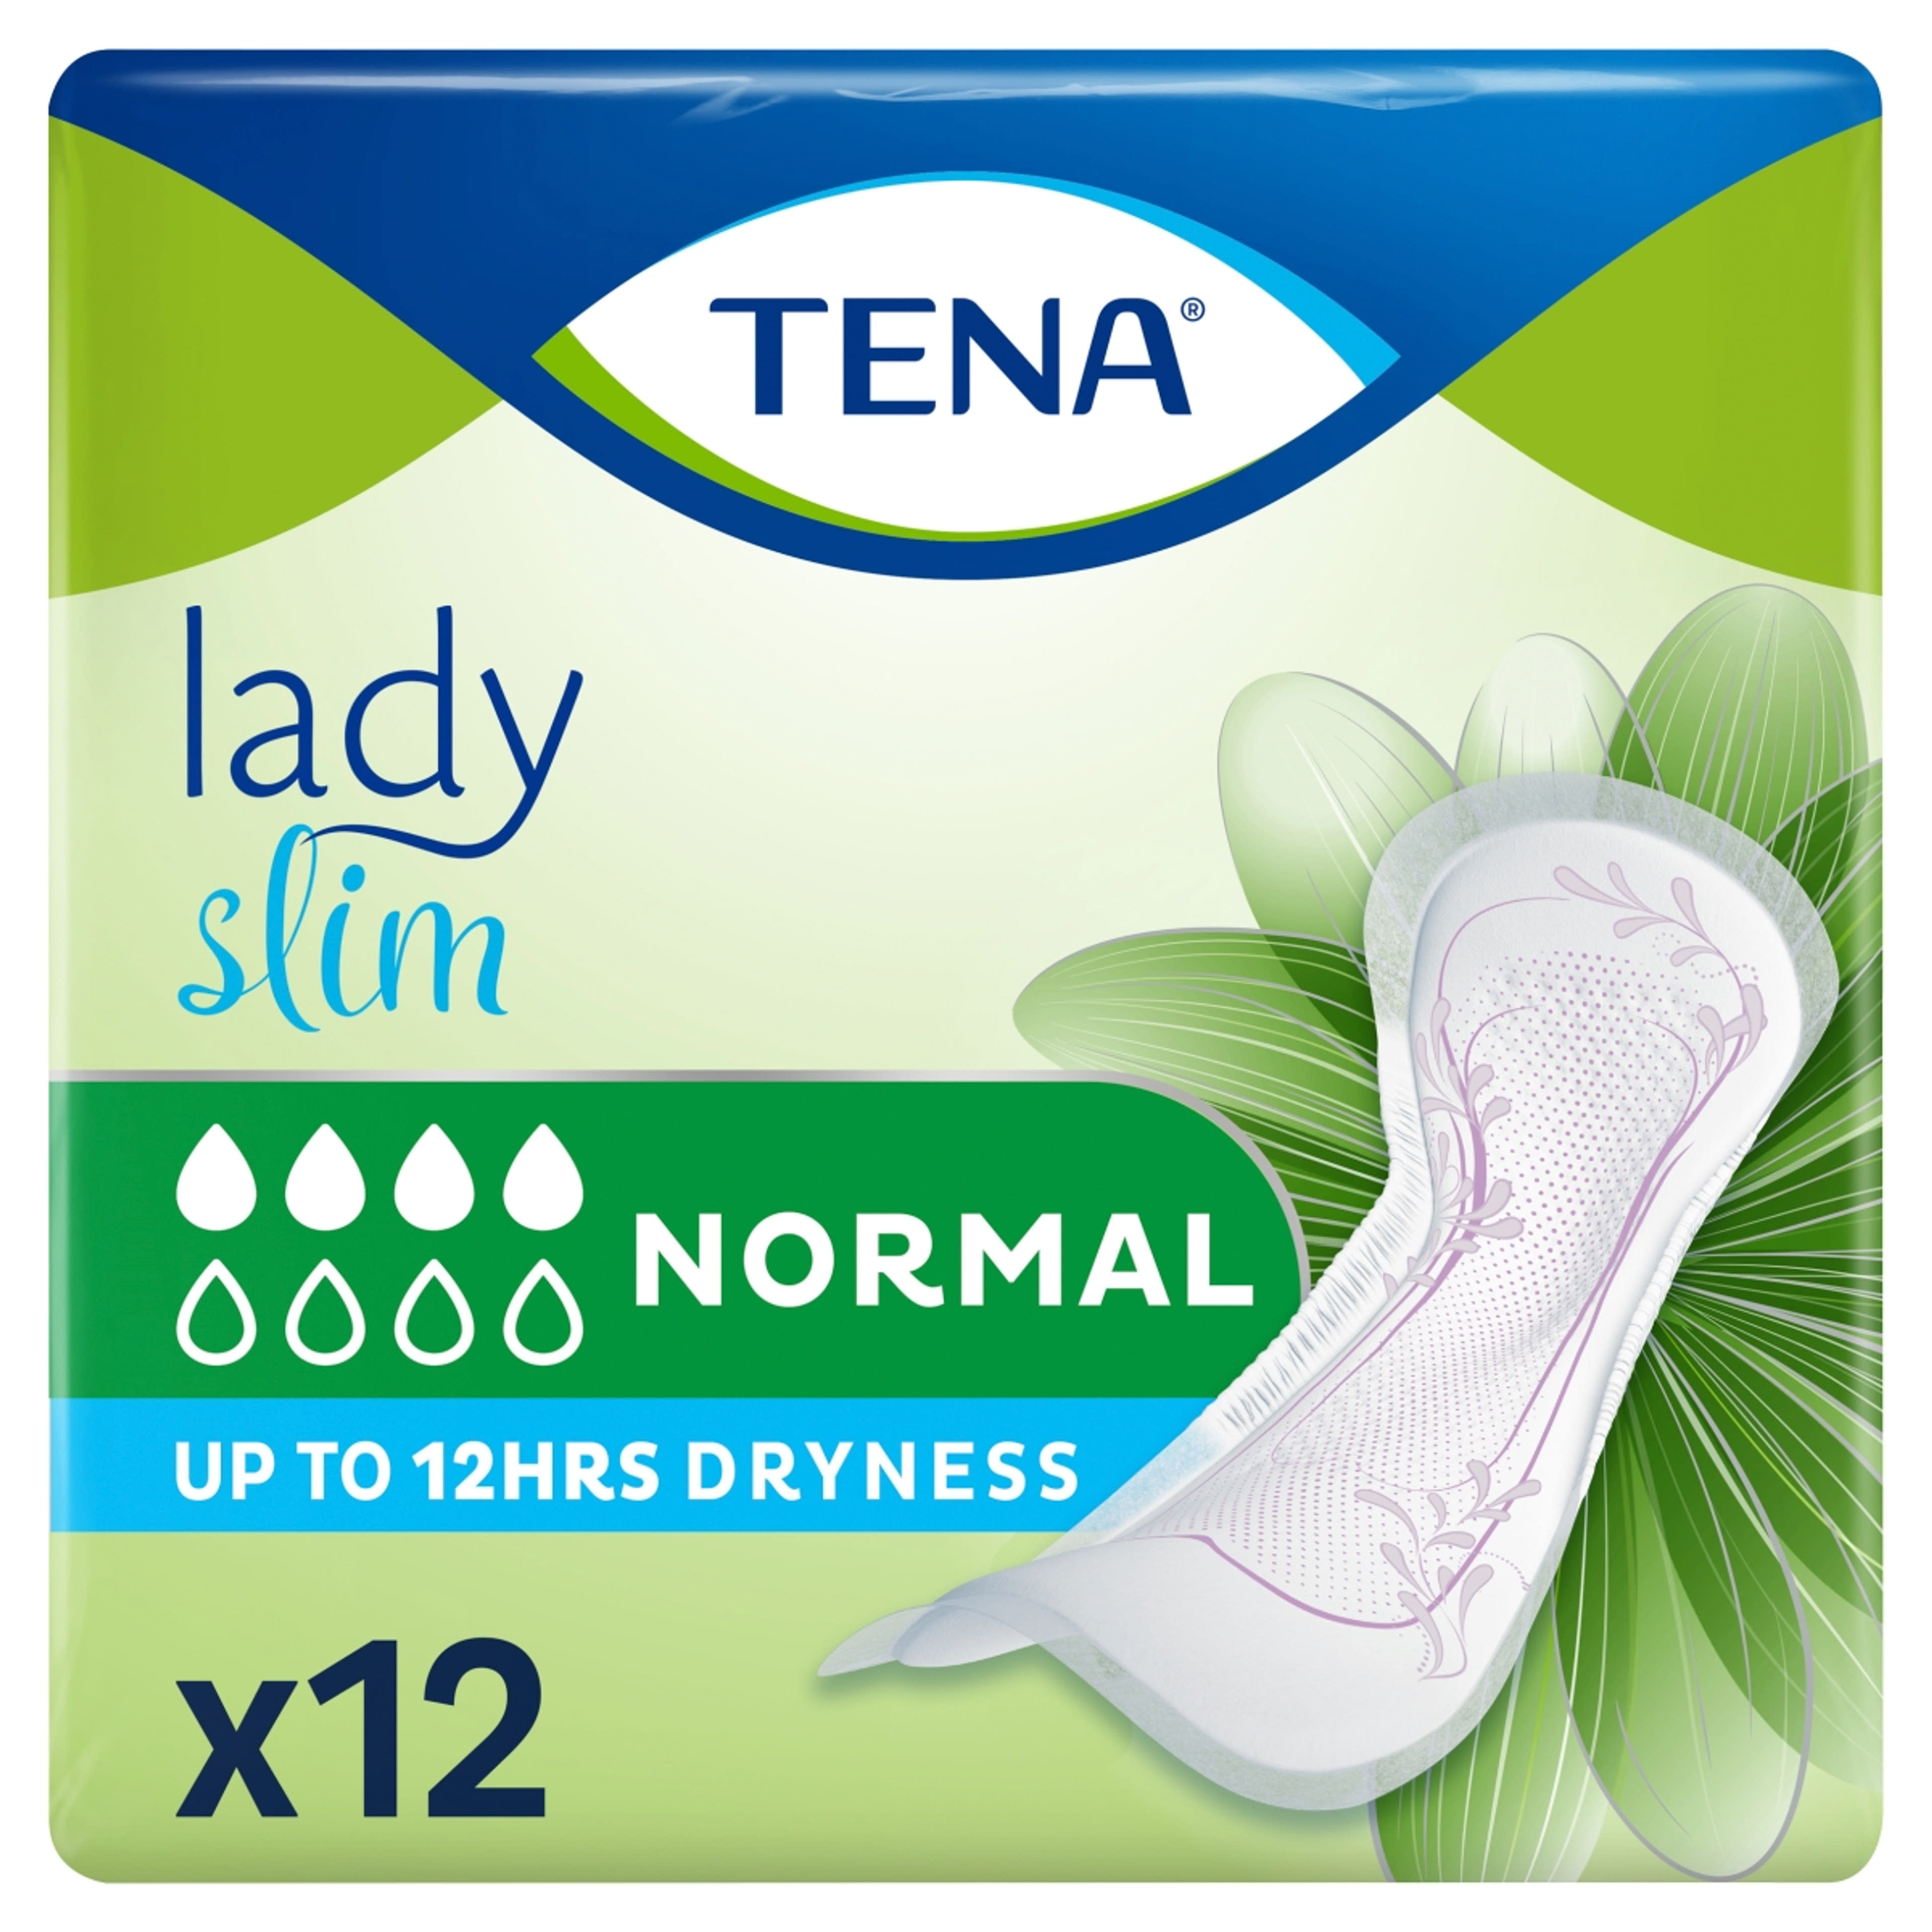 Tena lady slim normál inkontinencia betét - 12 db-5